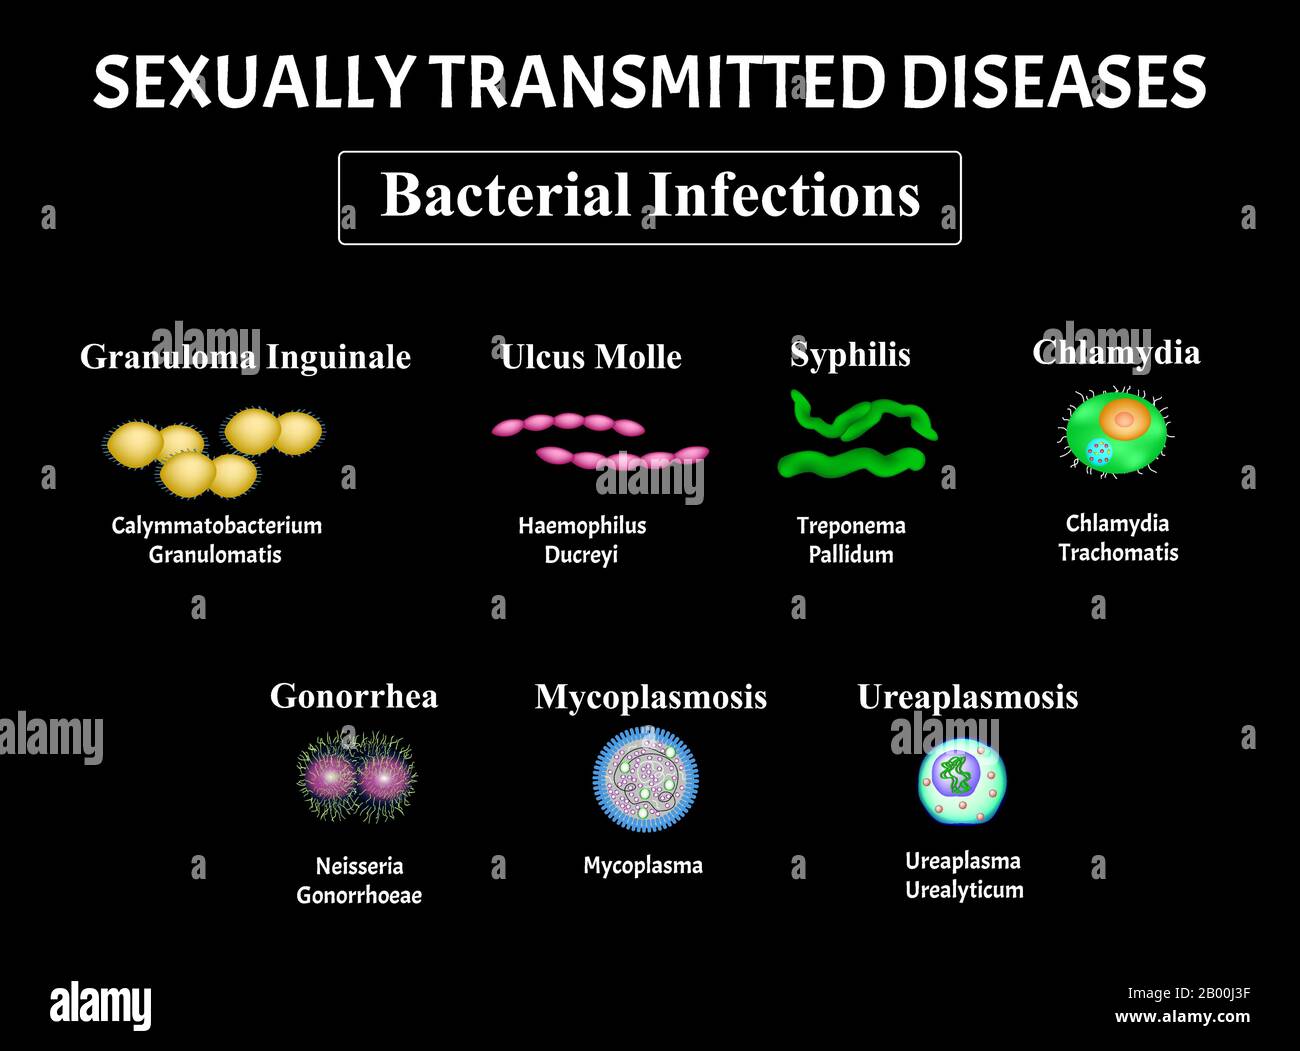 Sifilide, Spirochaete, Treponema, Gonococcus, Gonorrea, Clamidiosi, Clamidia, Mycoplasma, Set Di Infezioni Batteriche Ureaplasma. Trasmissione sessuale Illustrazione Vettoriale